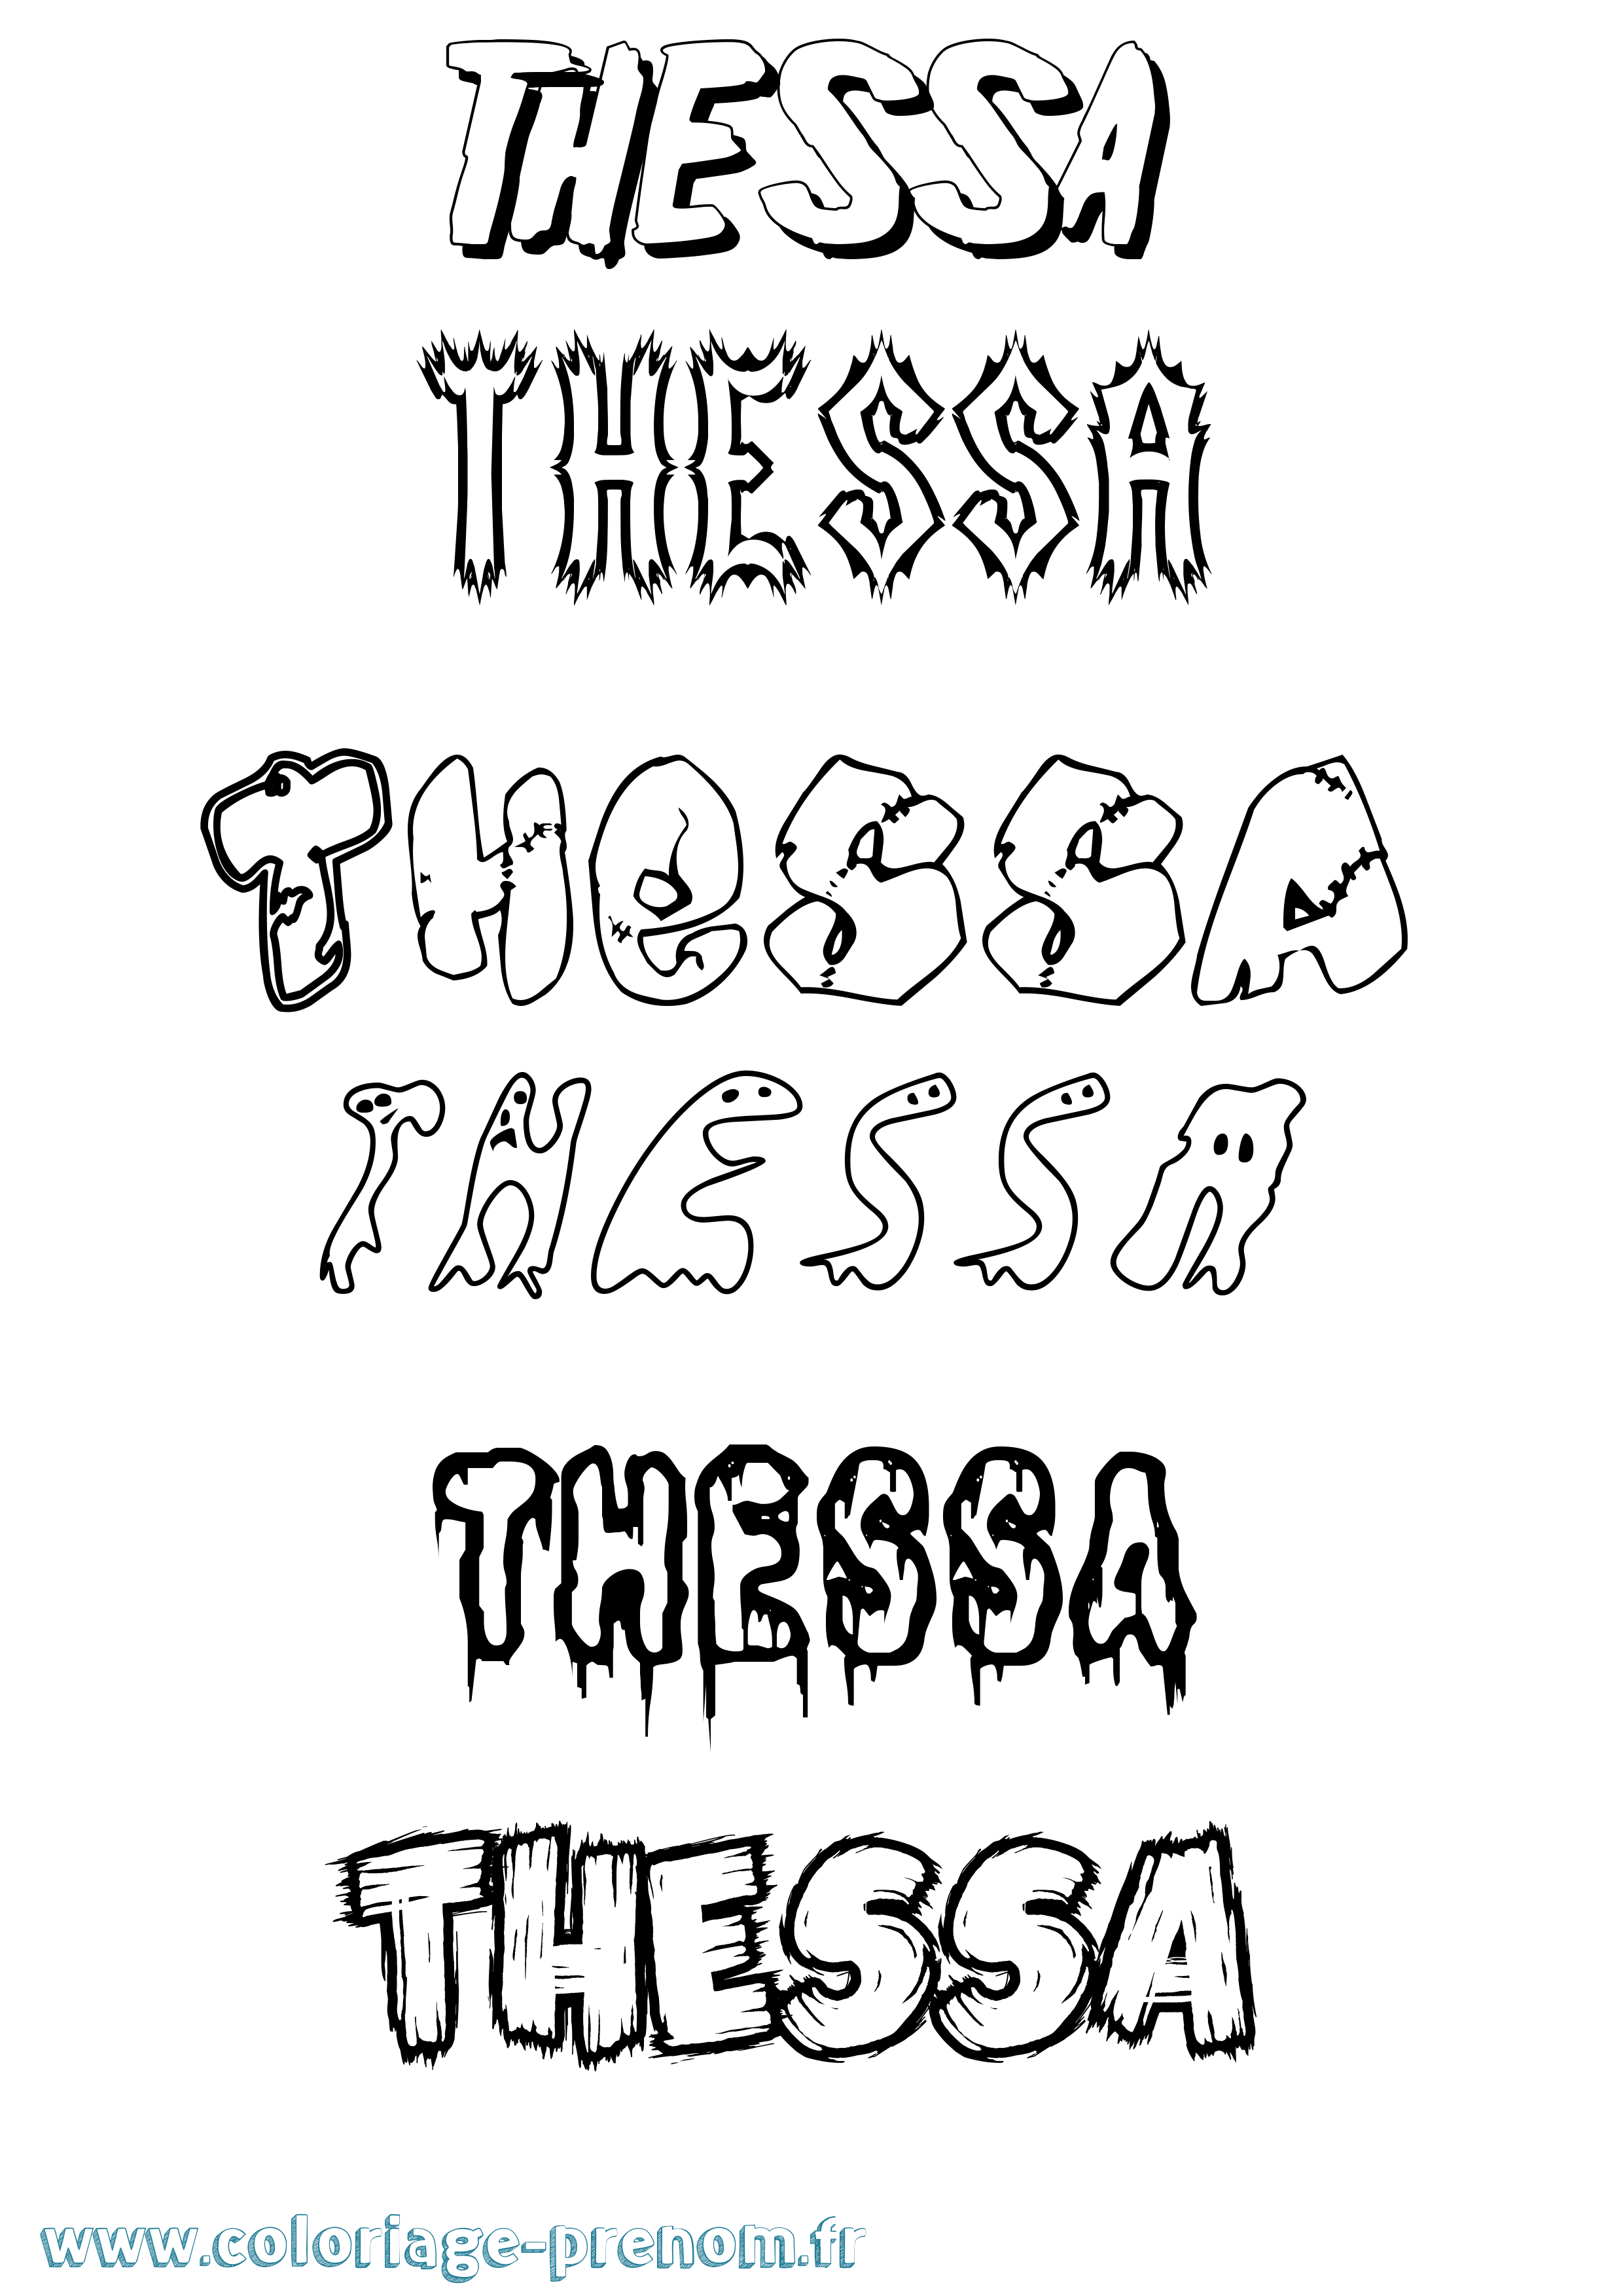 Coloriage prénom Thessa Frisson